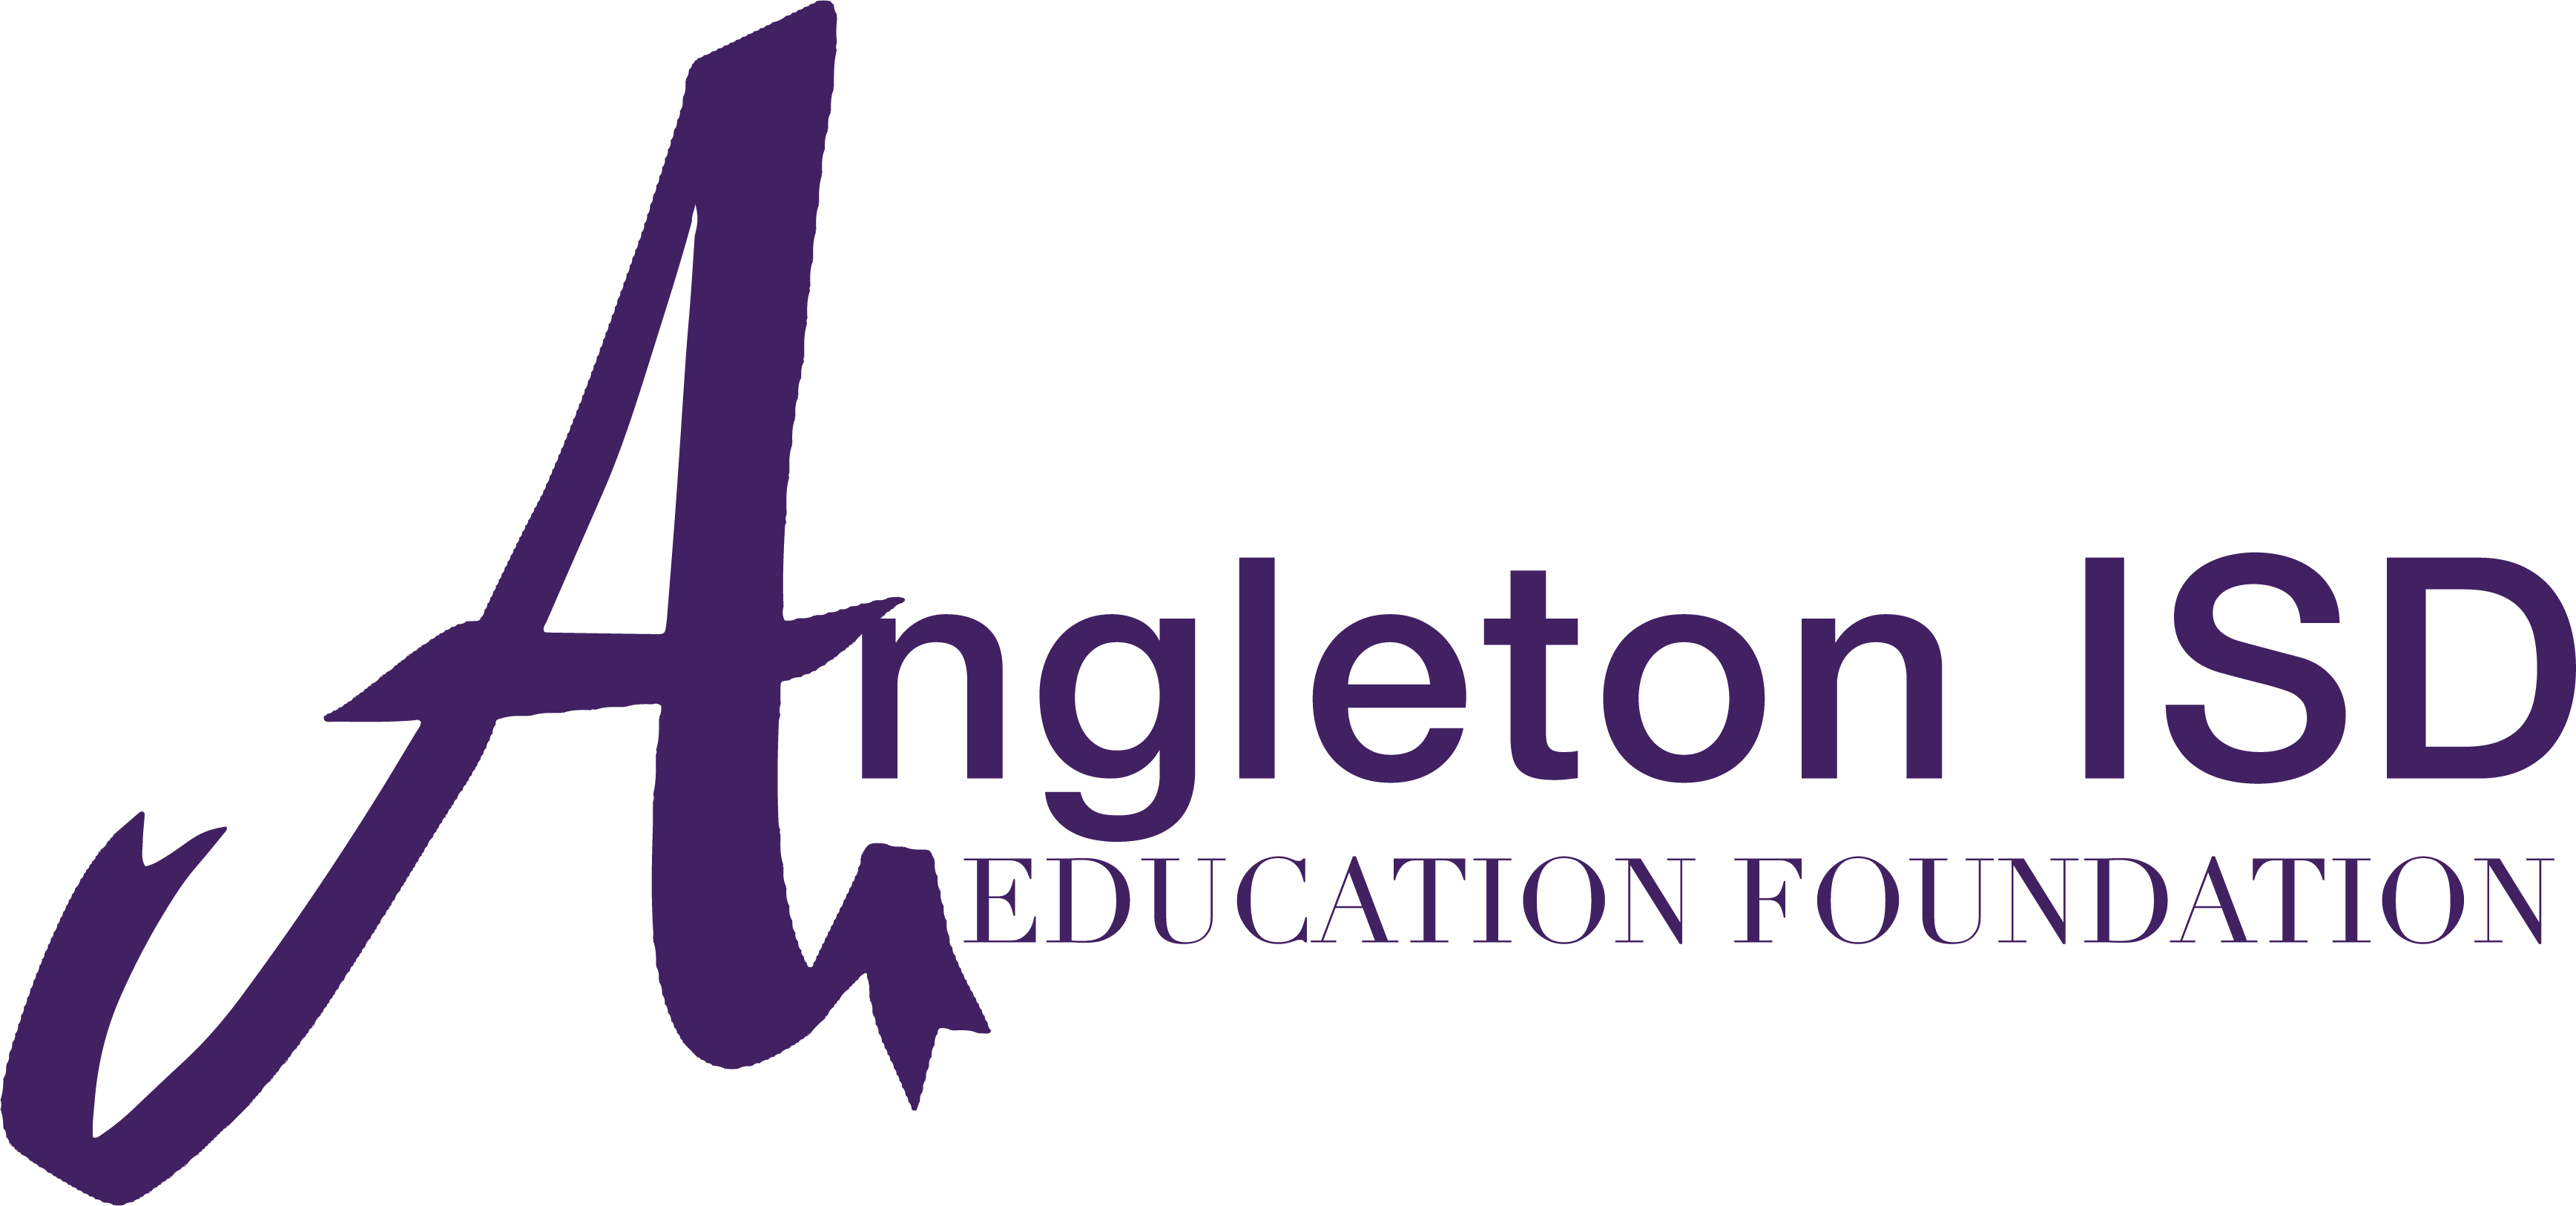 Angleton ISD Education Foundation logo